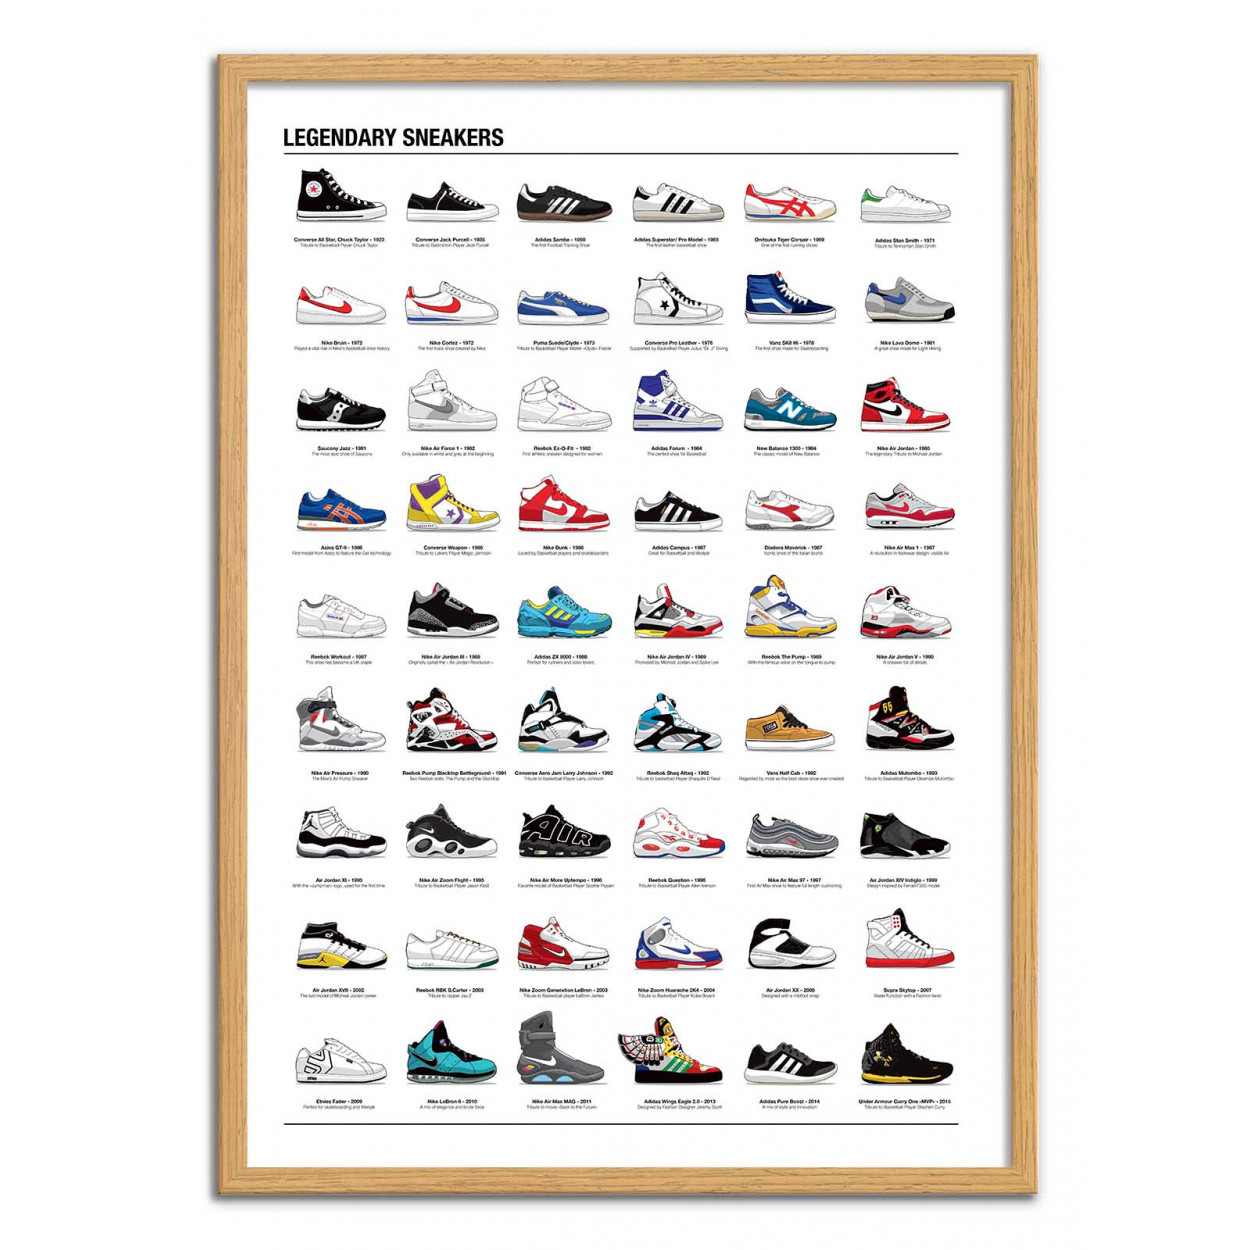 Byttehandel Hest Afbrydelse Art-Poster - Legendary Sneakers, by Olivier Bourdereau